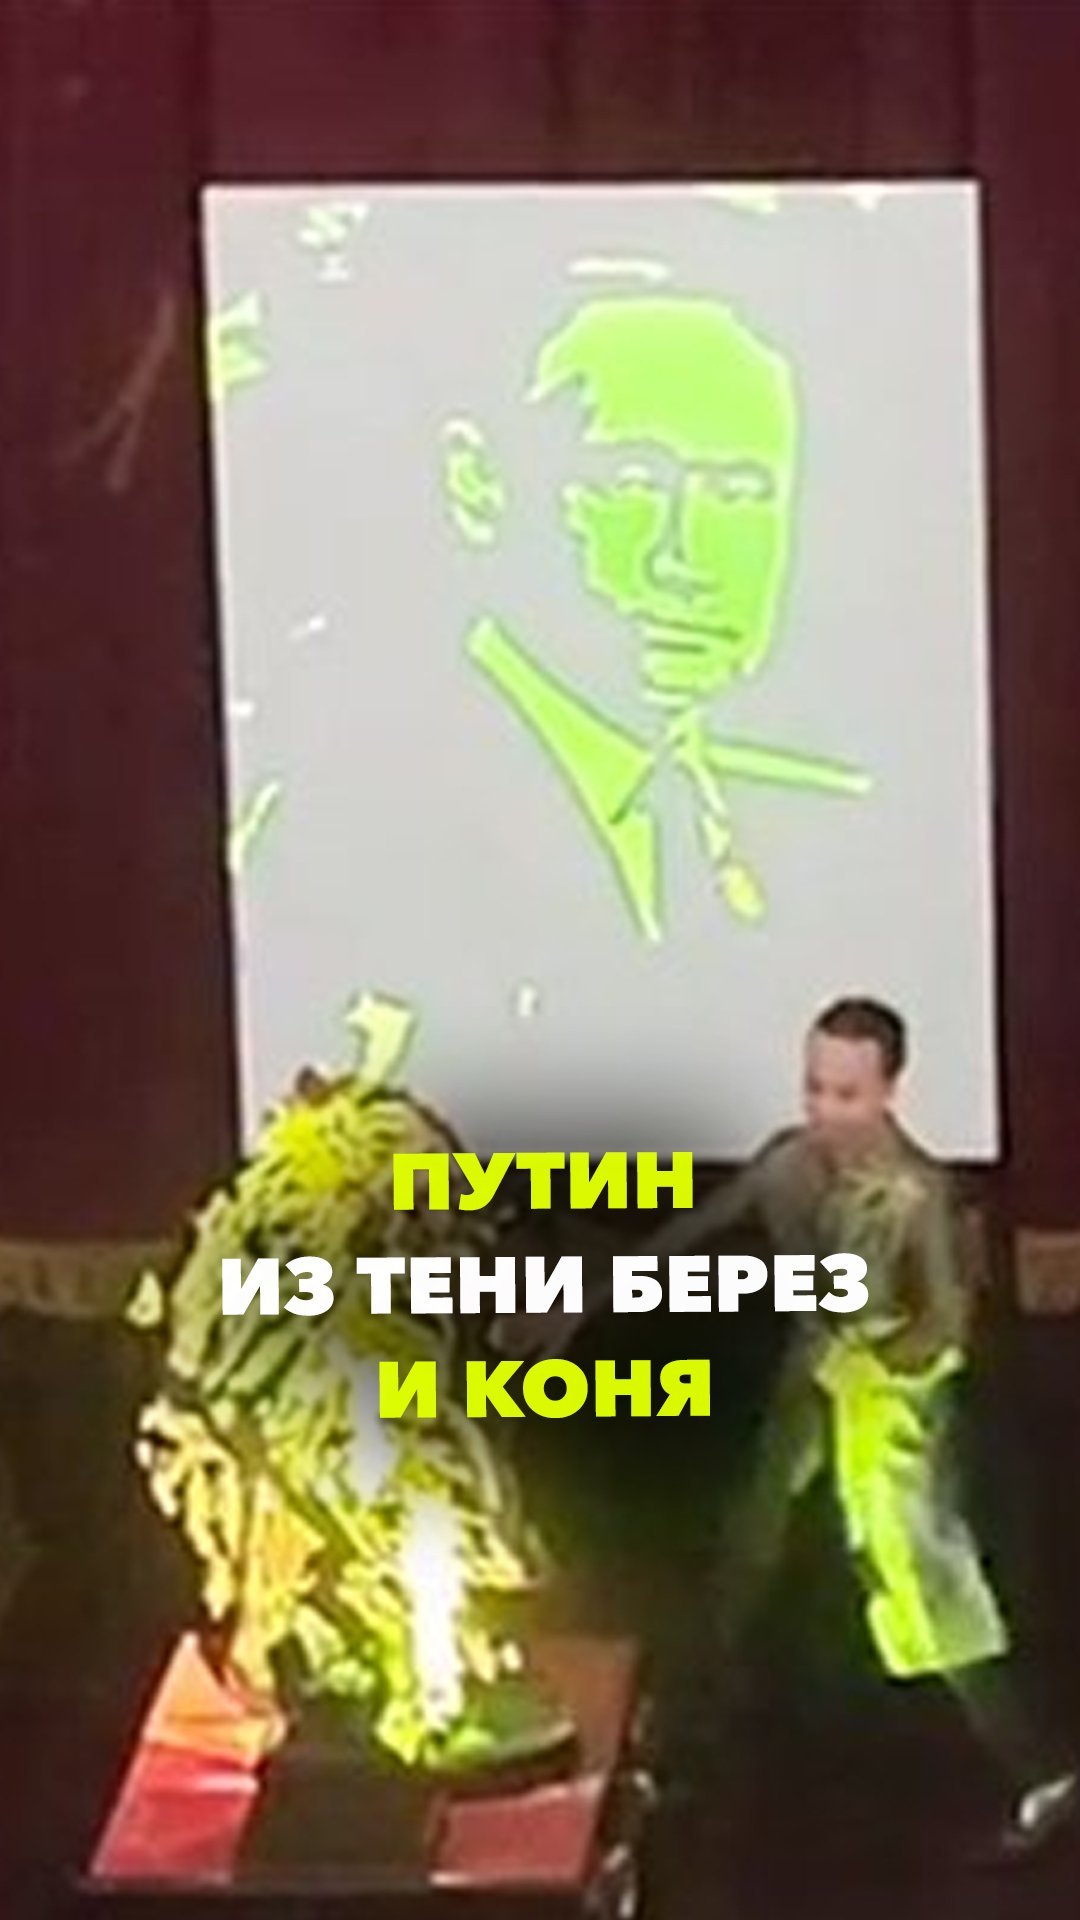 В Большом театре Ханоя показали портрет Путина. Сделали это через скульптуру из коня и берез